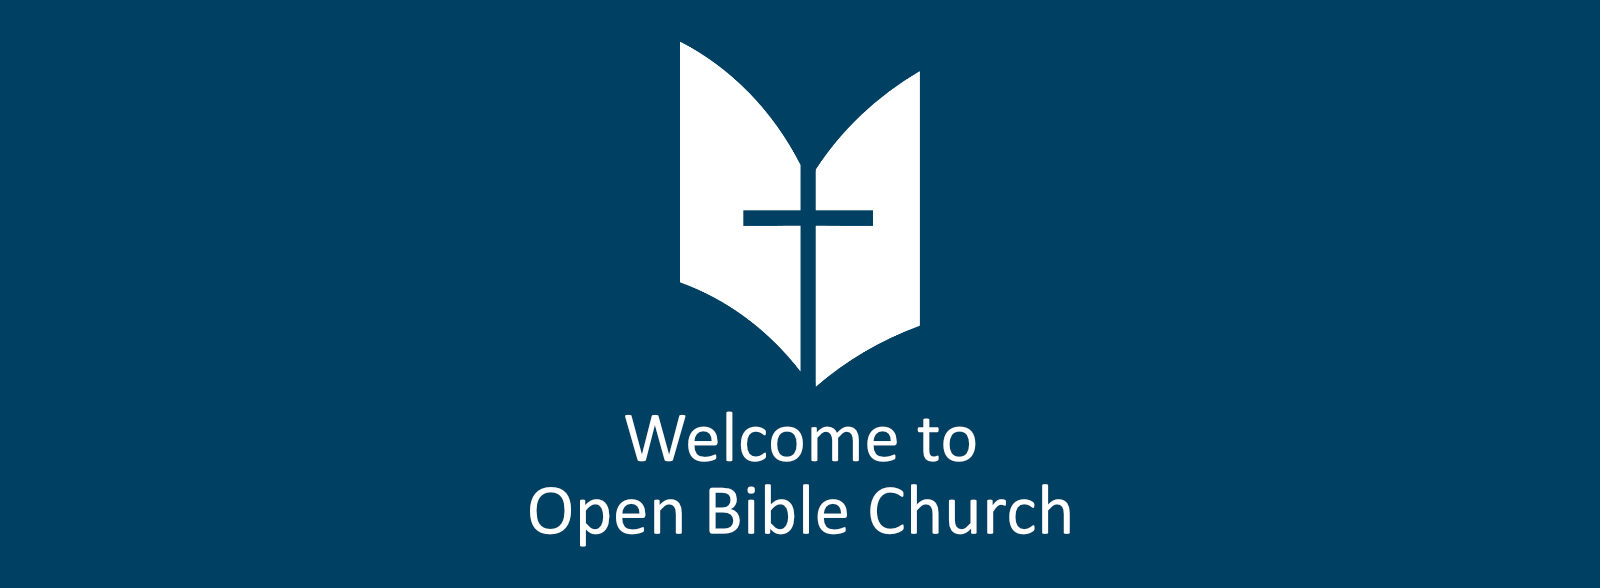 Open Bible Church